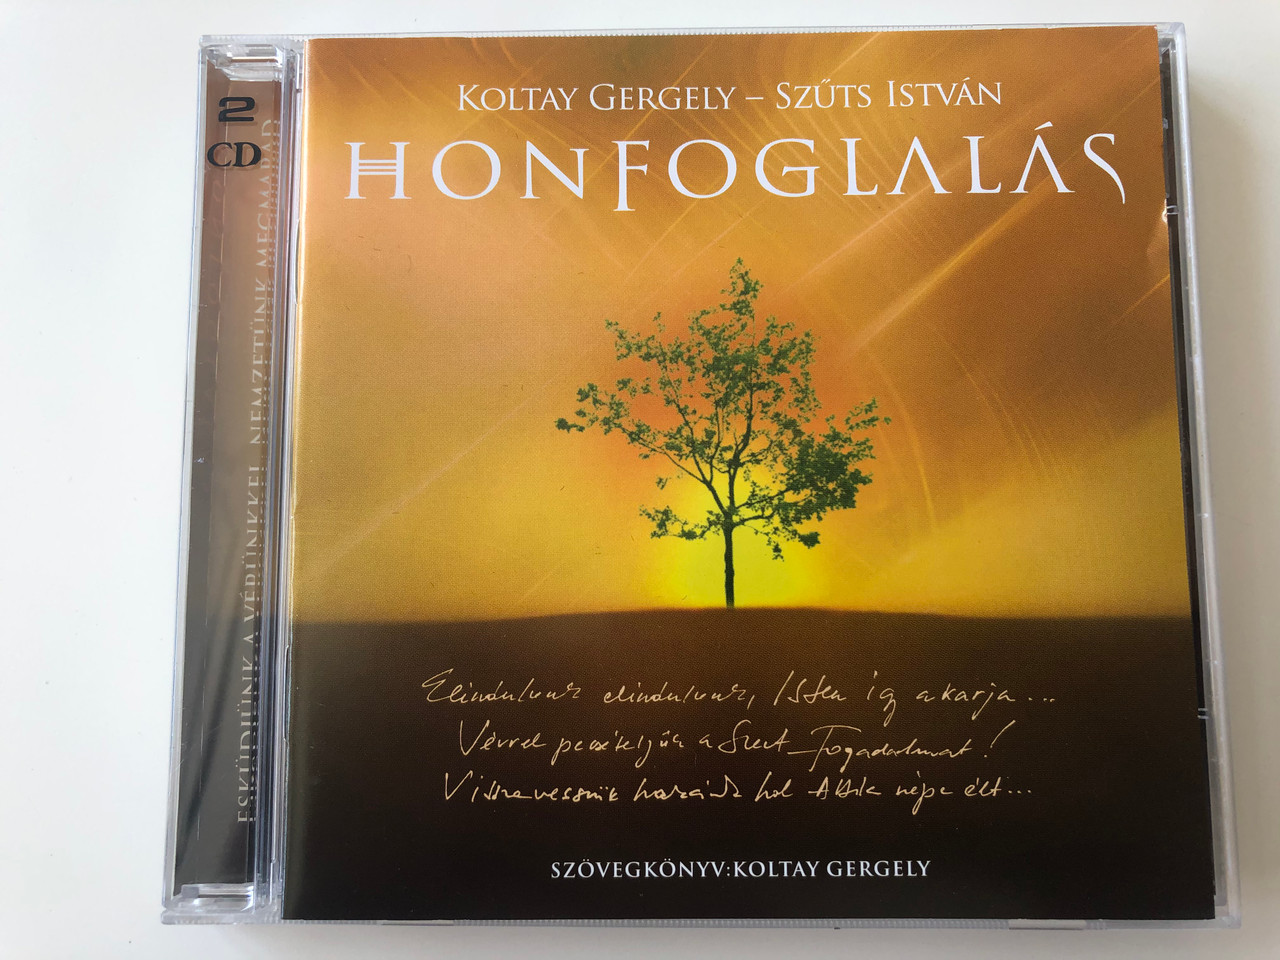 Koltay Gergely - Szűts István - Honfoglalás - Rockopera 2CD / Audio CD 2011  - bibleinmylanguage